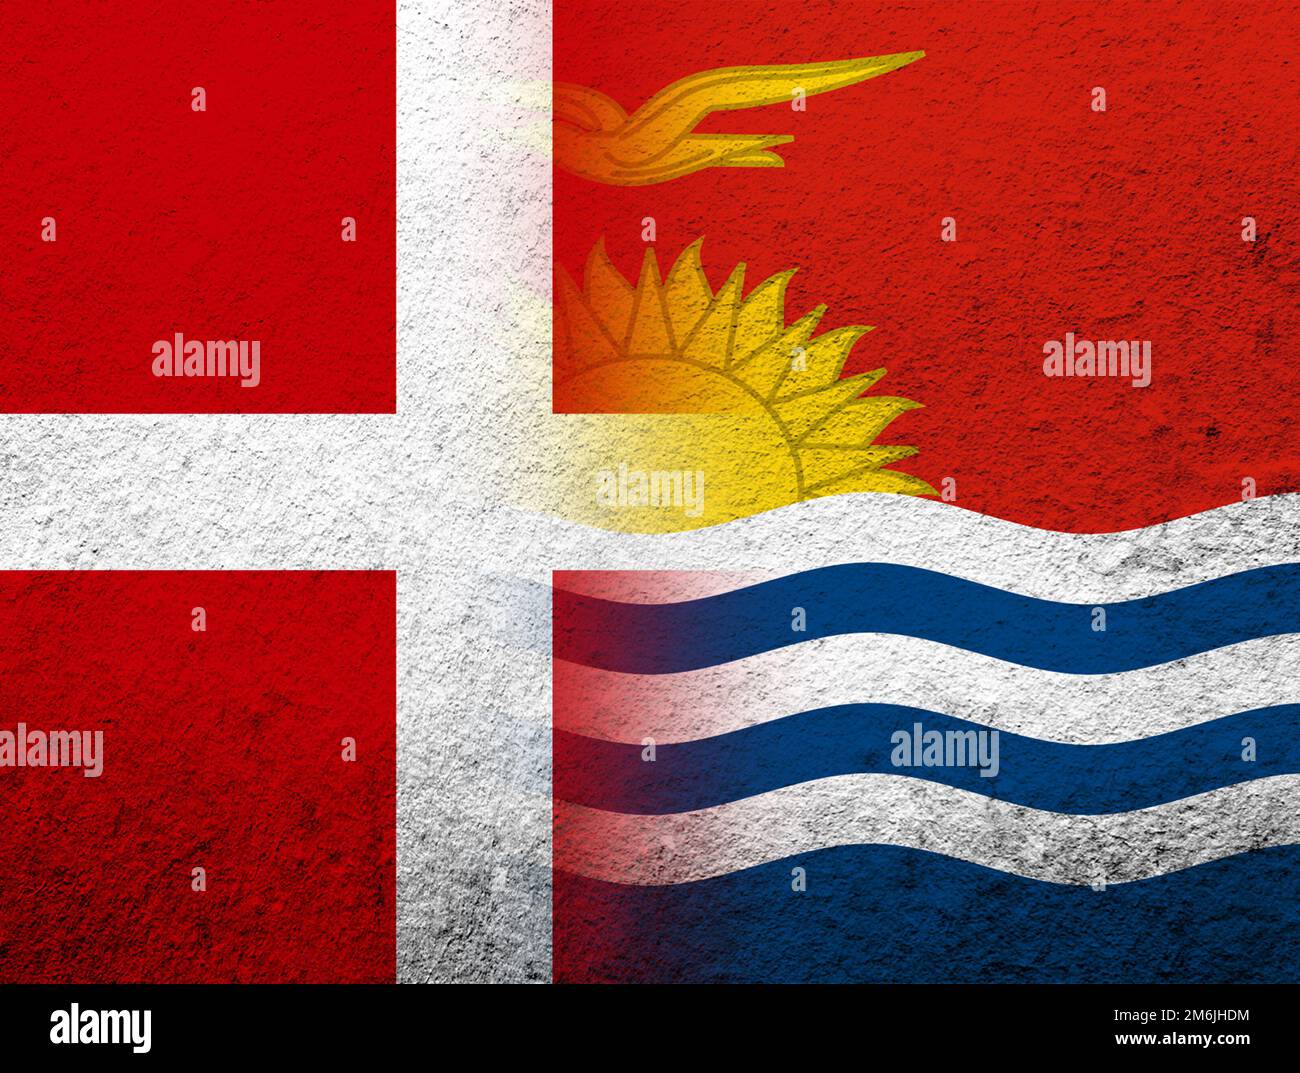 Le Royaume de Danemark drapeau national avec la République de Kiribati drapeau national. Grunge l'arrière-plan Banque D'Images